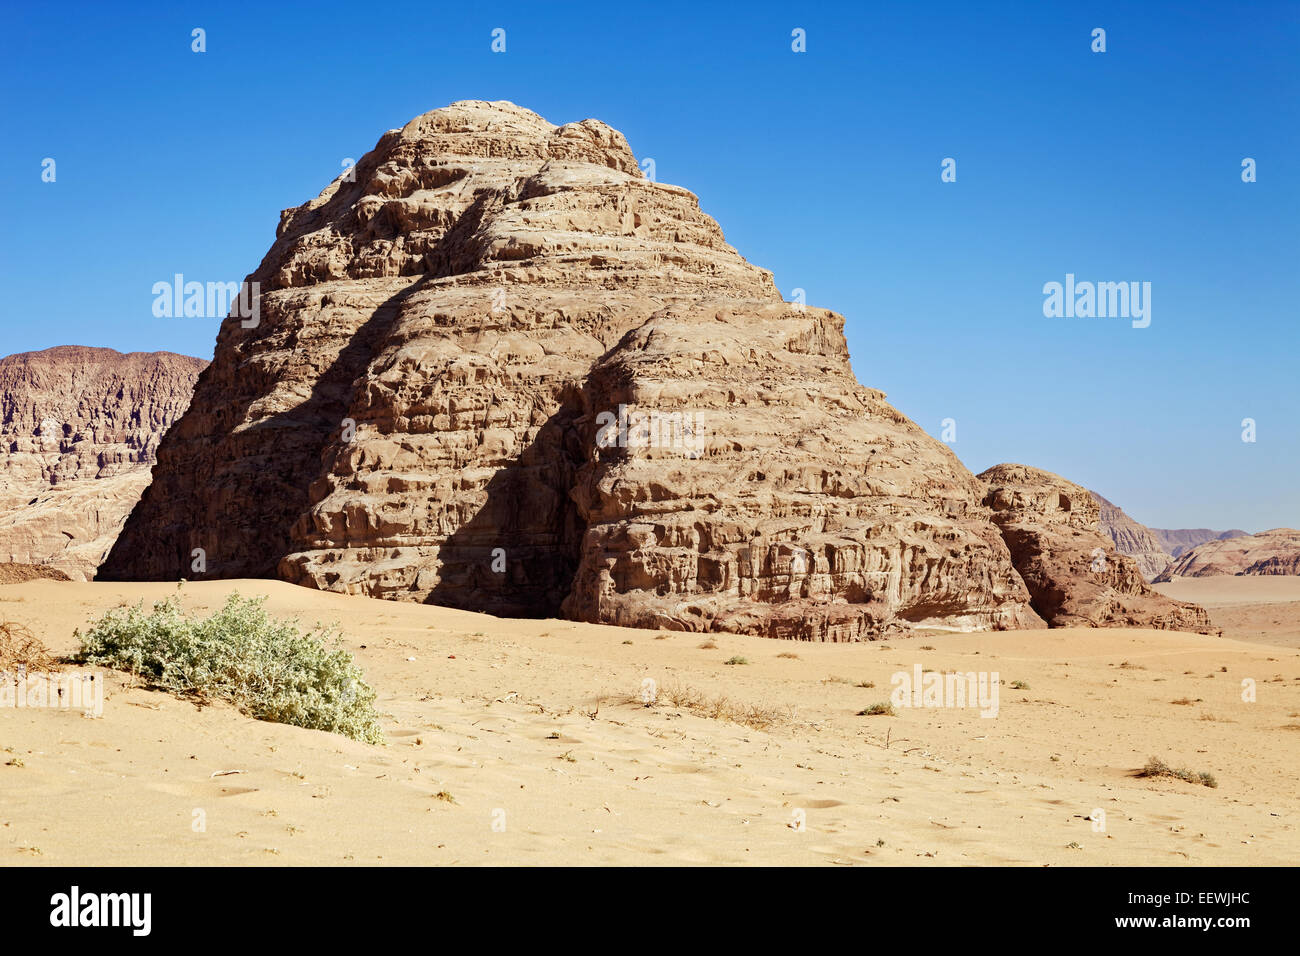 Desert plain with sandstone cliffs, desert, Wadi Rum, Jordan Stock Photo